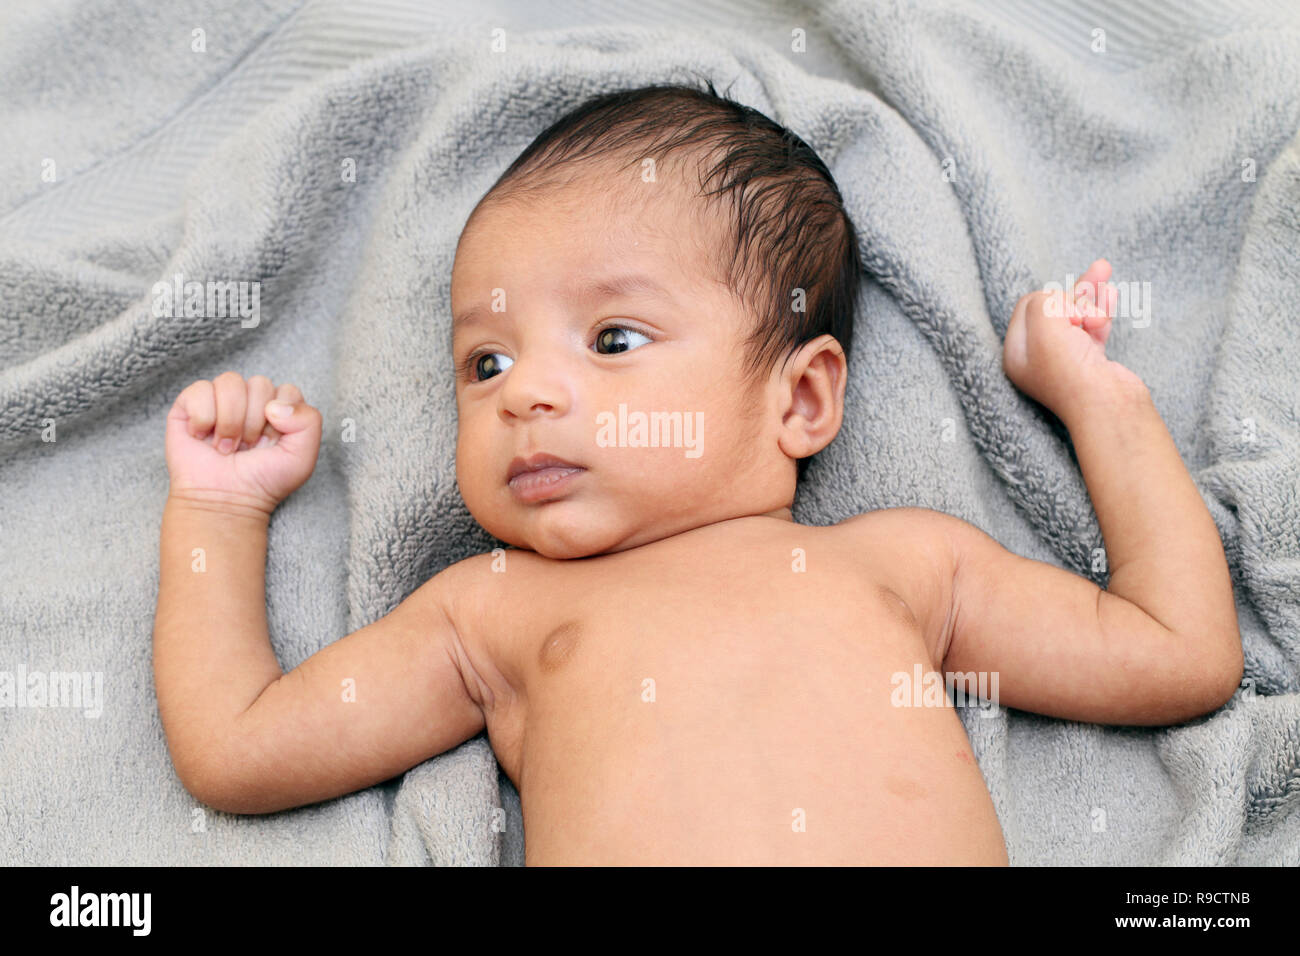 Cheerful Indian newborn baby close up Stock Photo